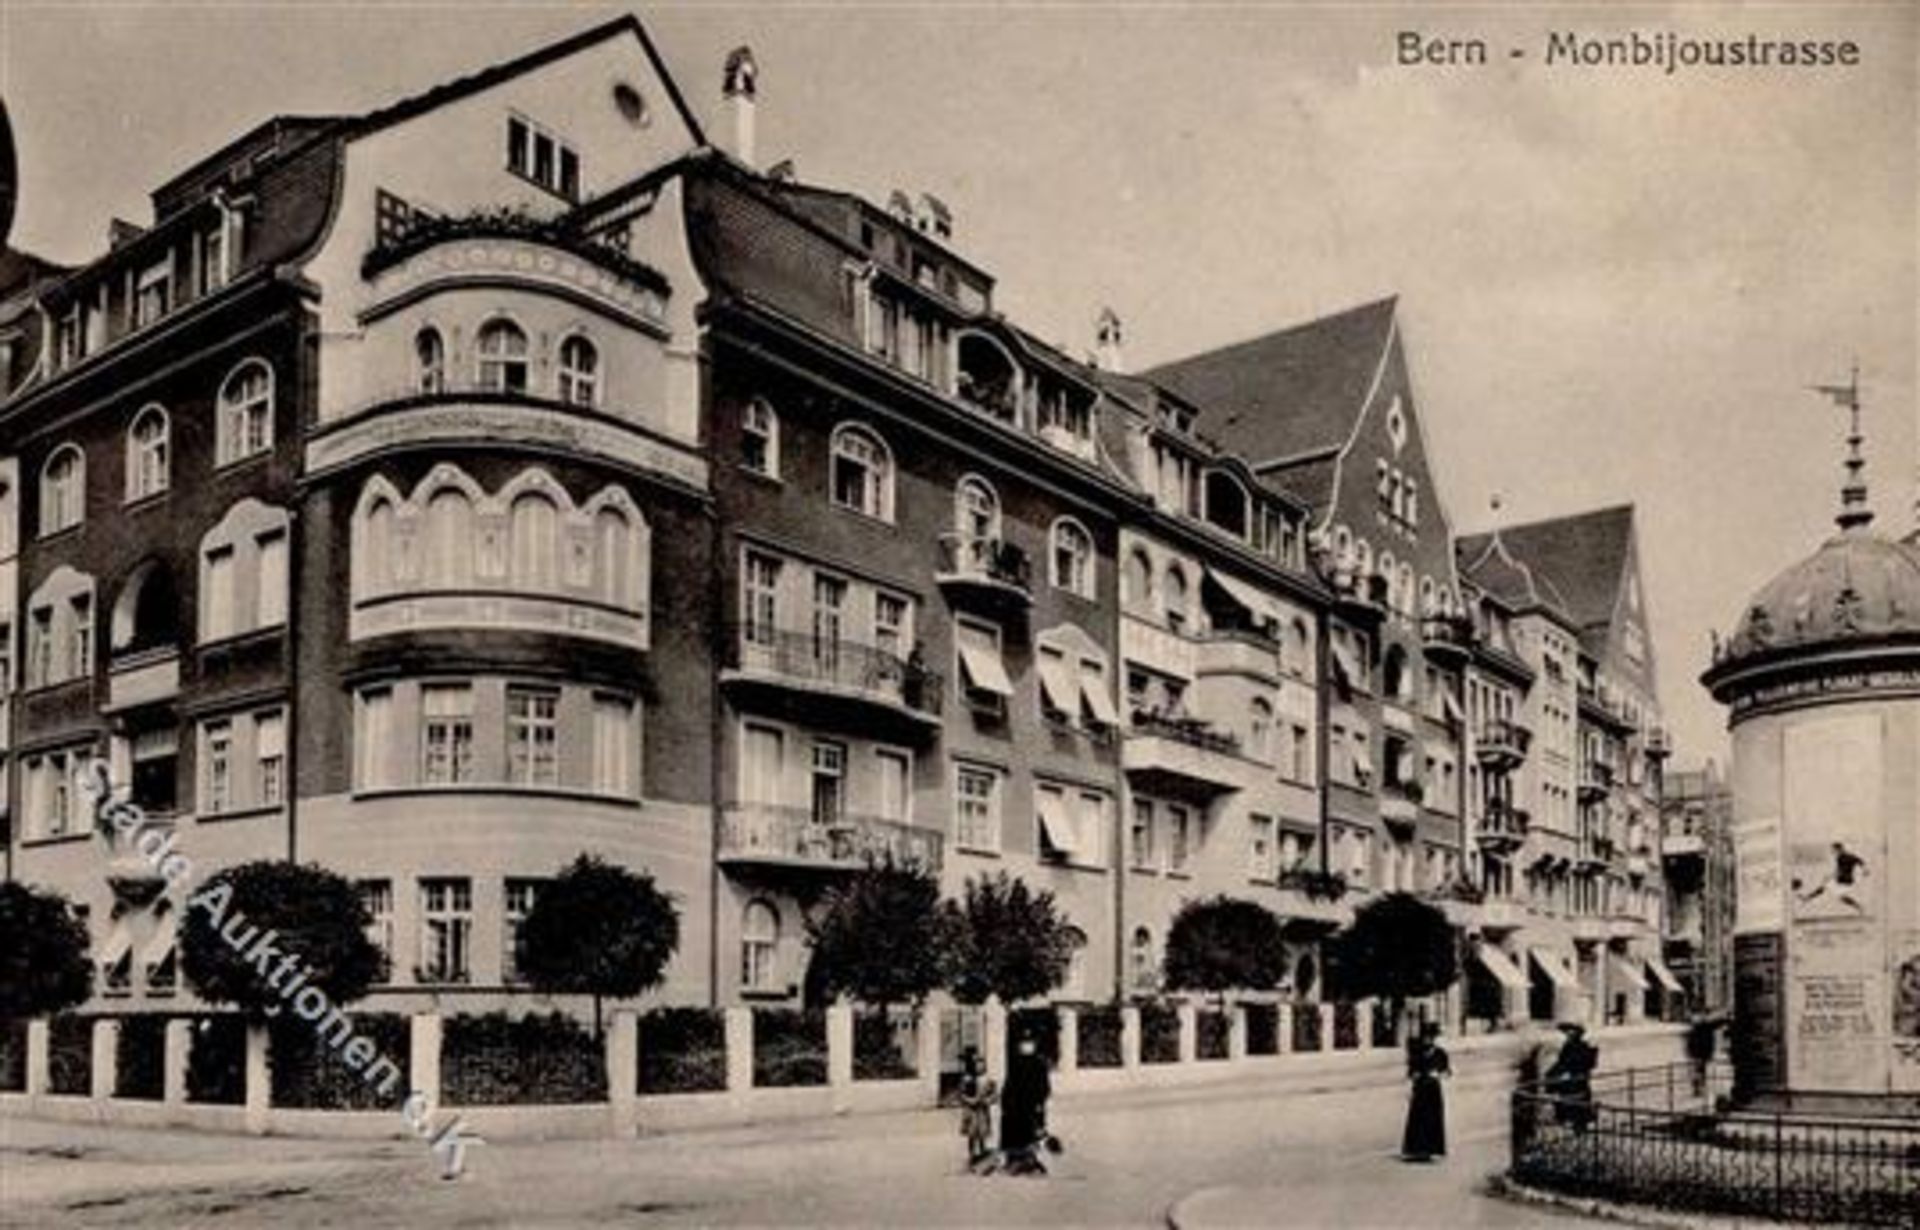 Bern (3000) Schweiz Monbijoustraße Litfaßsäule Handlung I-IIDieses Los wird in einer online-